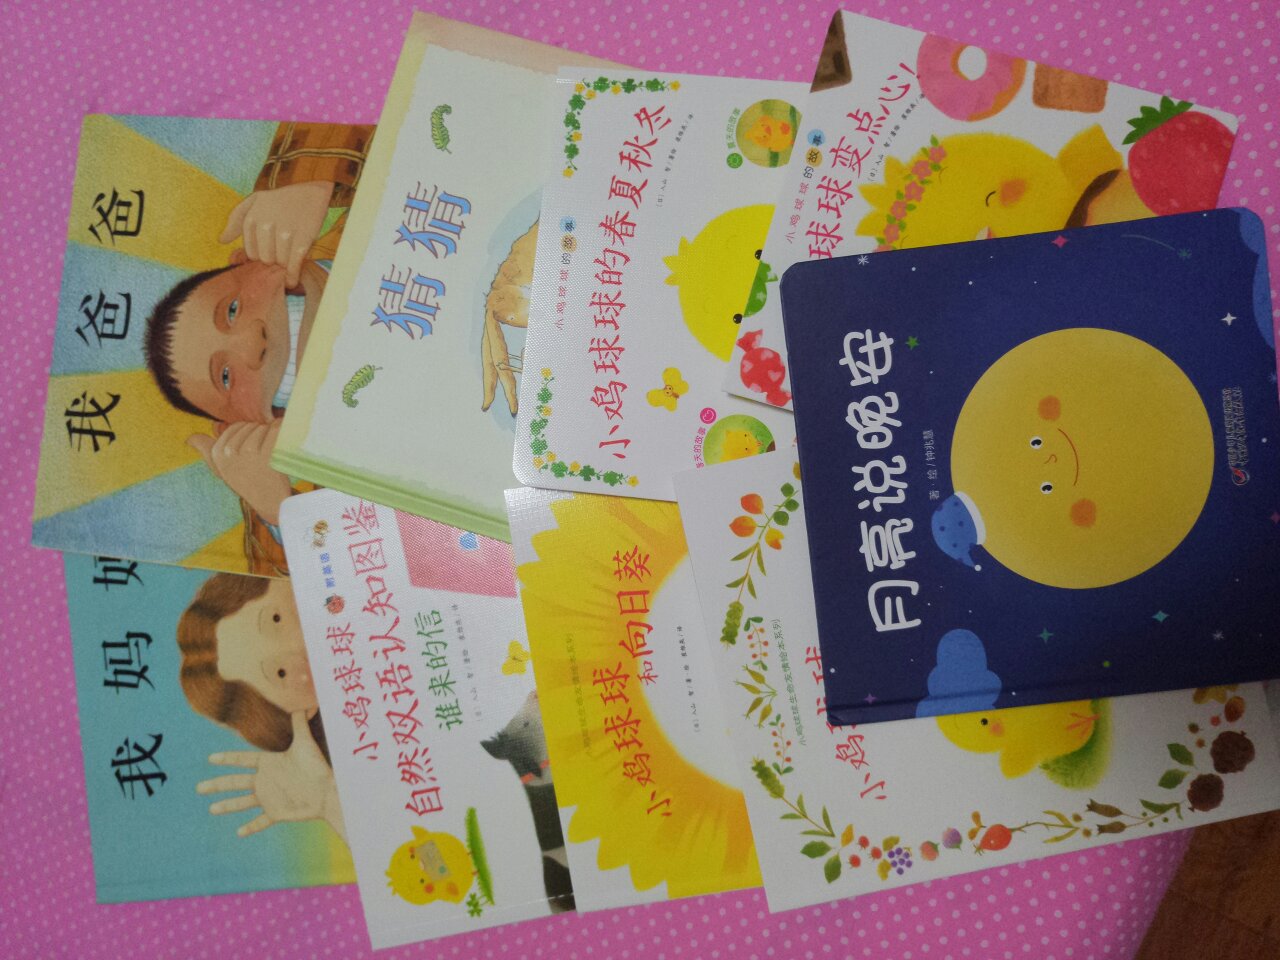 看了多篇推荐选择的这几本书，个人很喜欢，画质颜色艳丽图画内容有趣有爱，希望宝宝也喜欢。宝宝现在还小，读绘本可以训练宝宝的专注力，坚持加油↖(^ω^)↗。